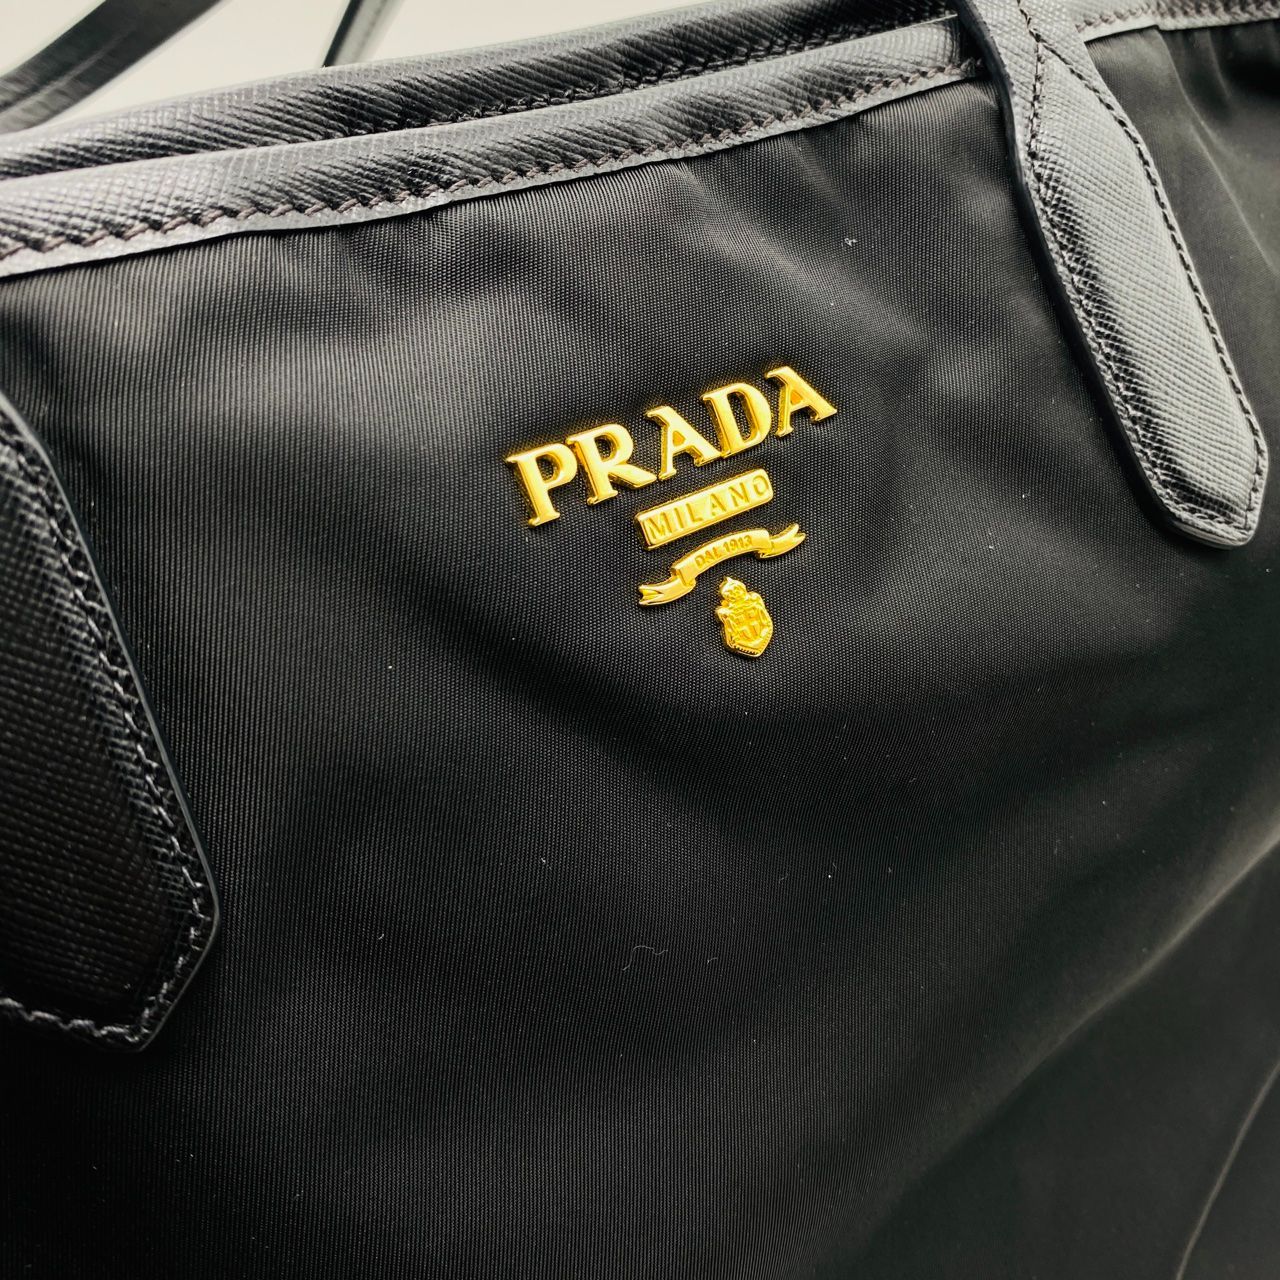 PRADA プラダ ナイロン サフィアーノ トートバッグ ハンドバッグ NERO ブラック BR4001